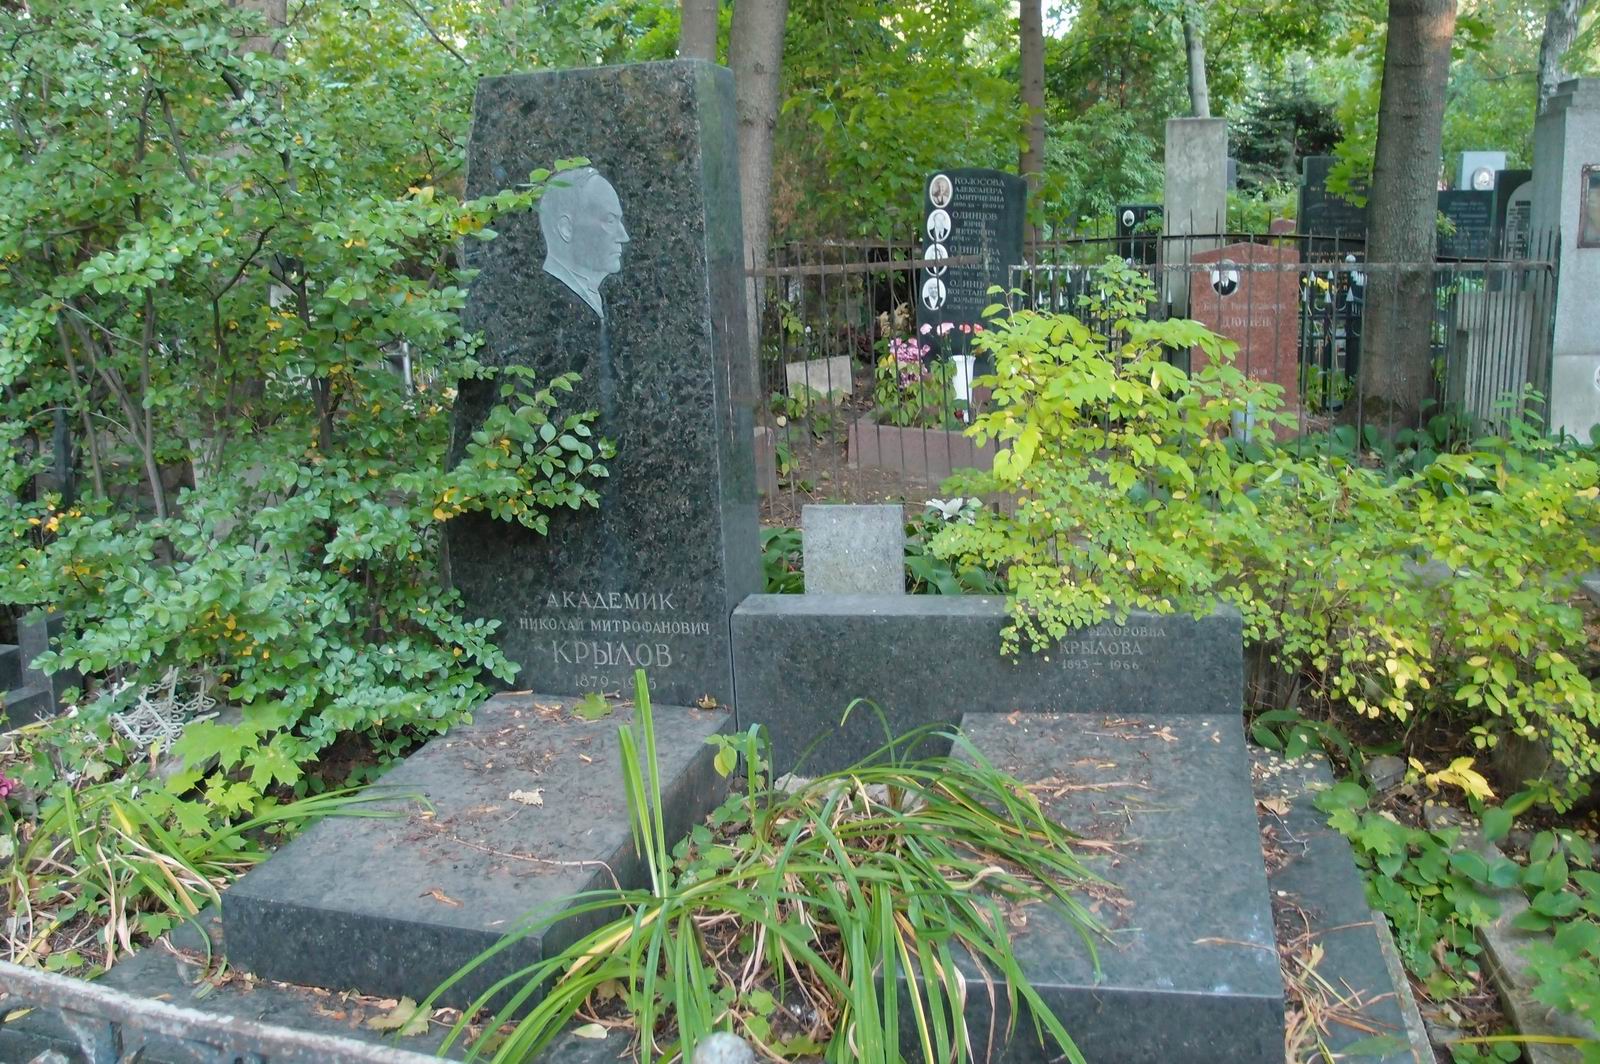 Памятник на могиле Крылова Н.М. (1879-1955), на Новодевичьем кладбище (3-38-8). Нажмите левую кнопку мыши чтобы увидеть фрагмент памятника.